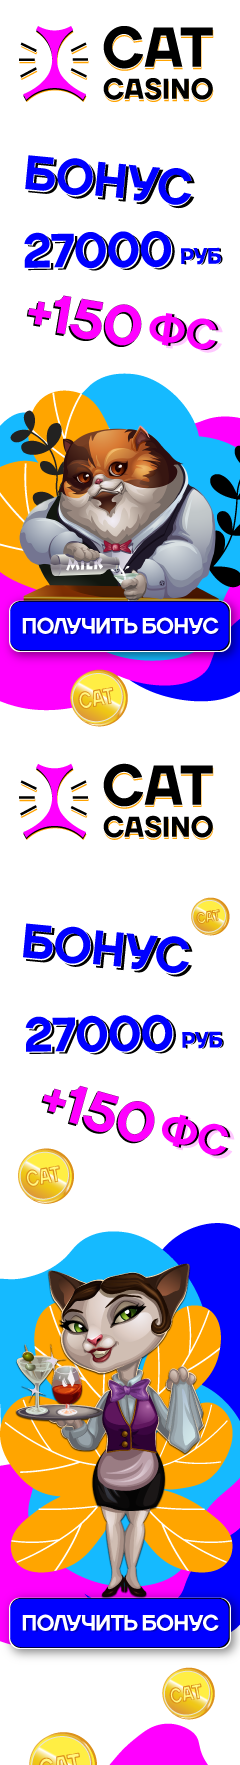 Cat kazino